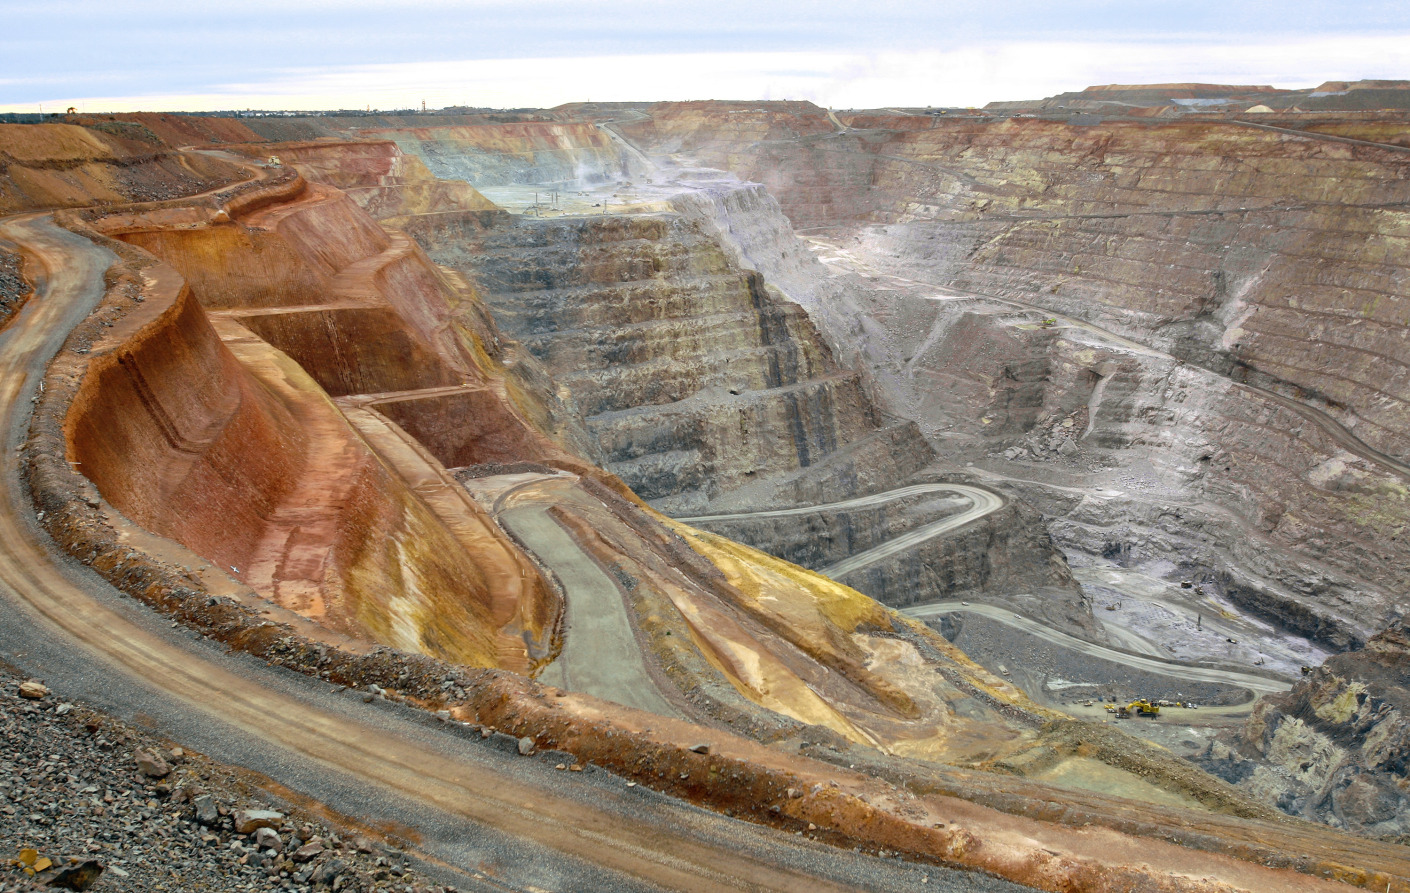 Key Speakers At Diggers & Dealers Mining Forum And General Views Of Kalgoorlie